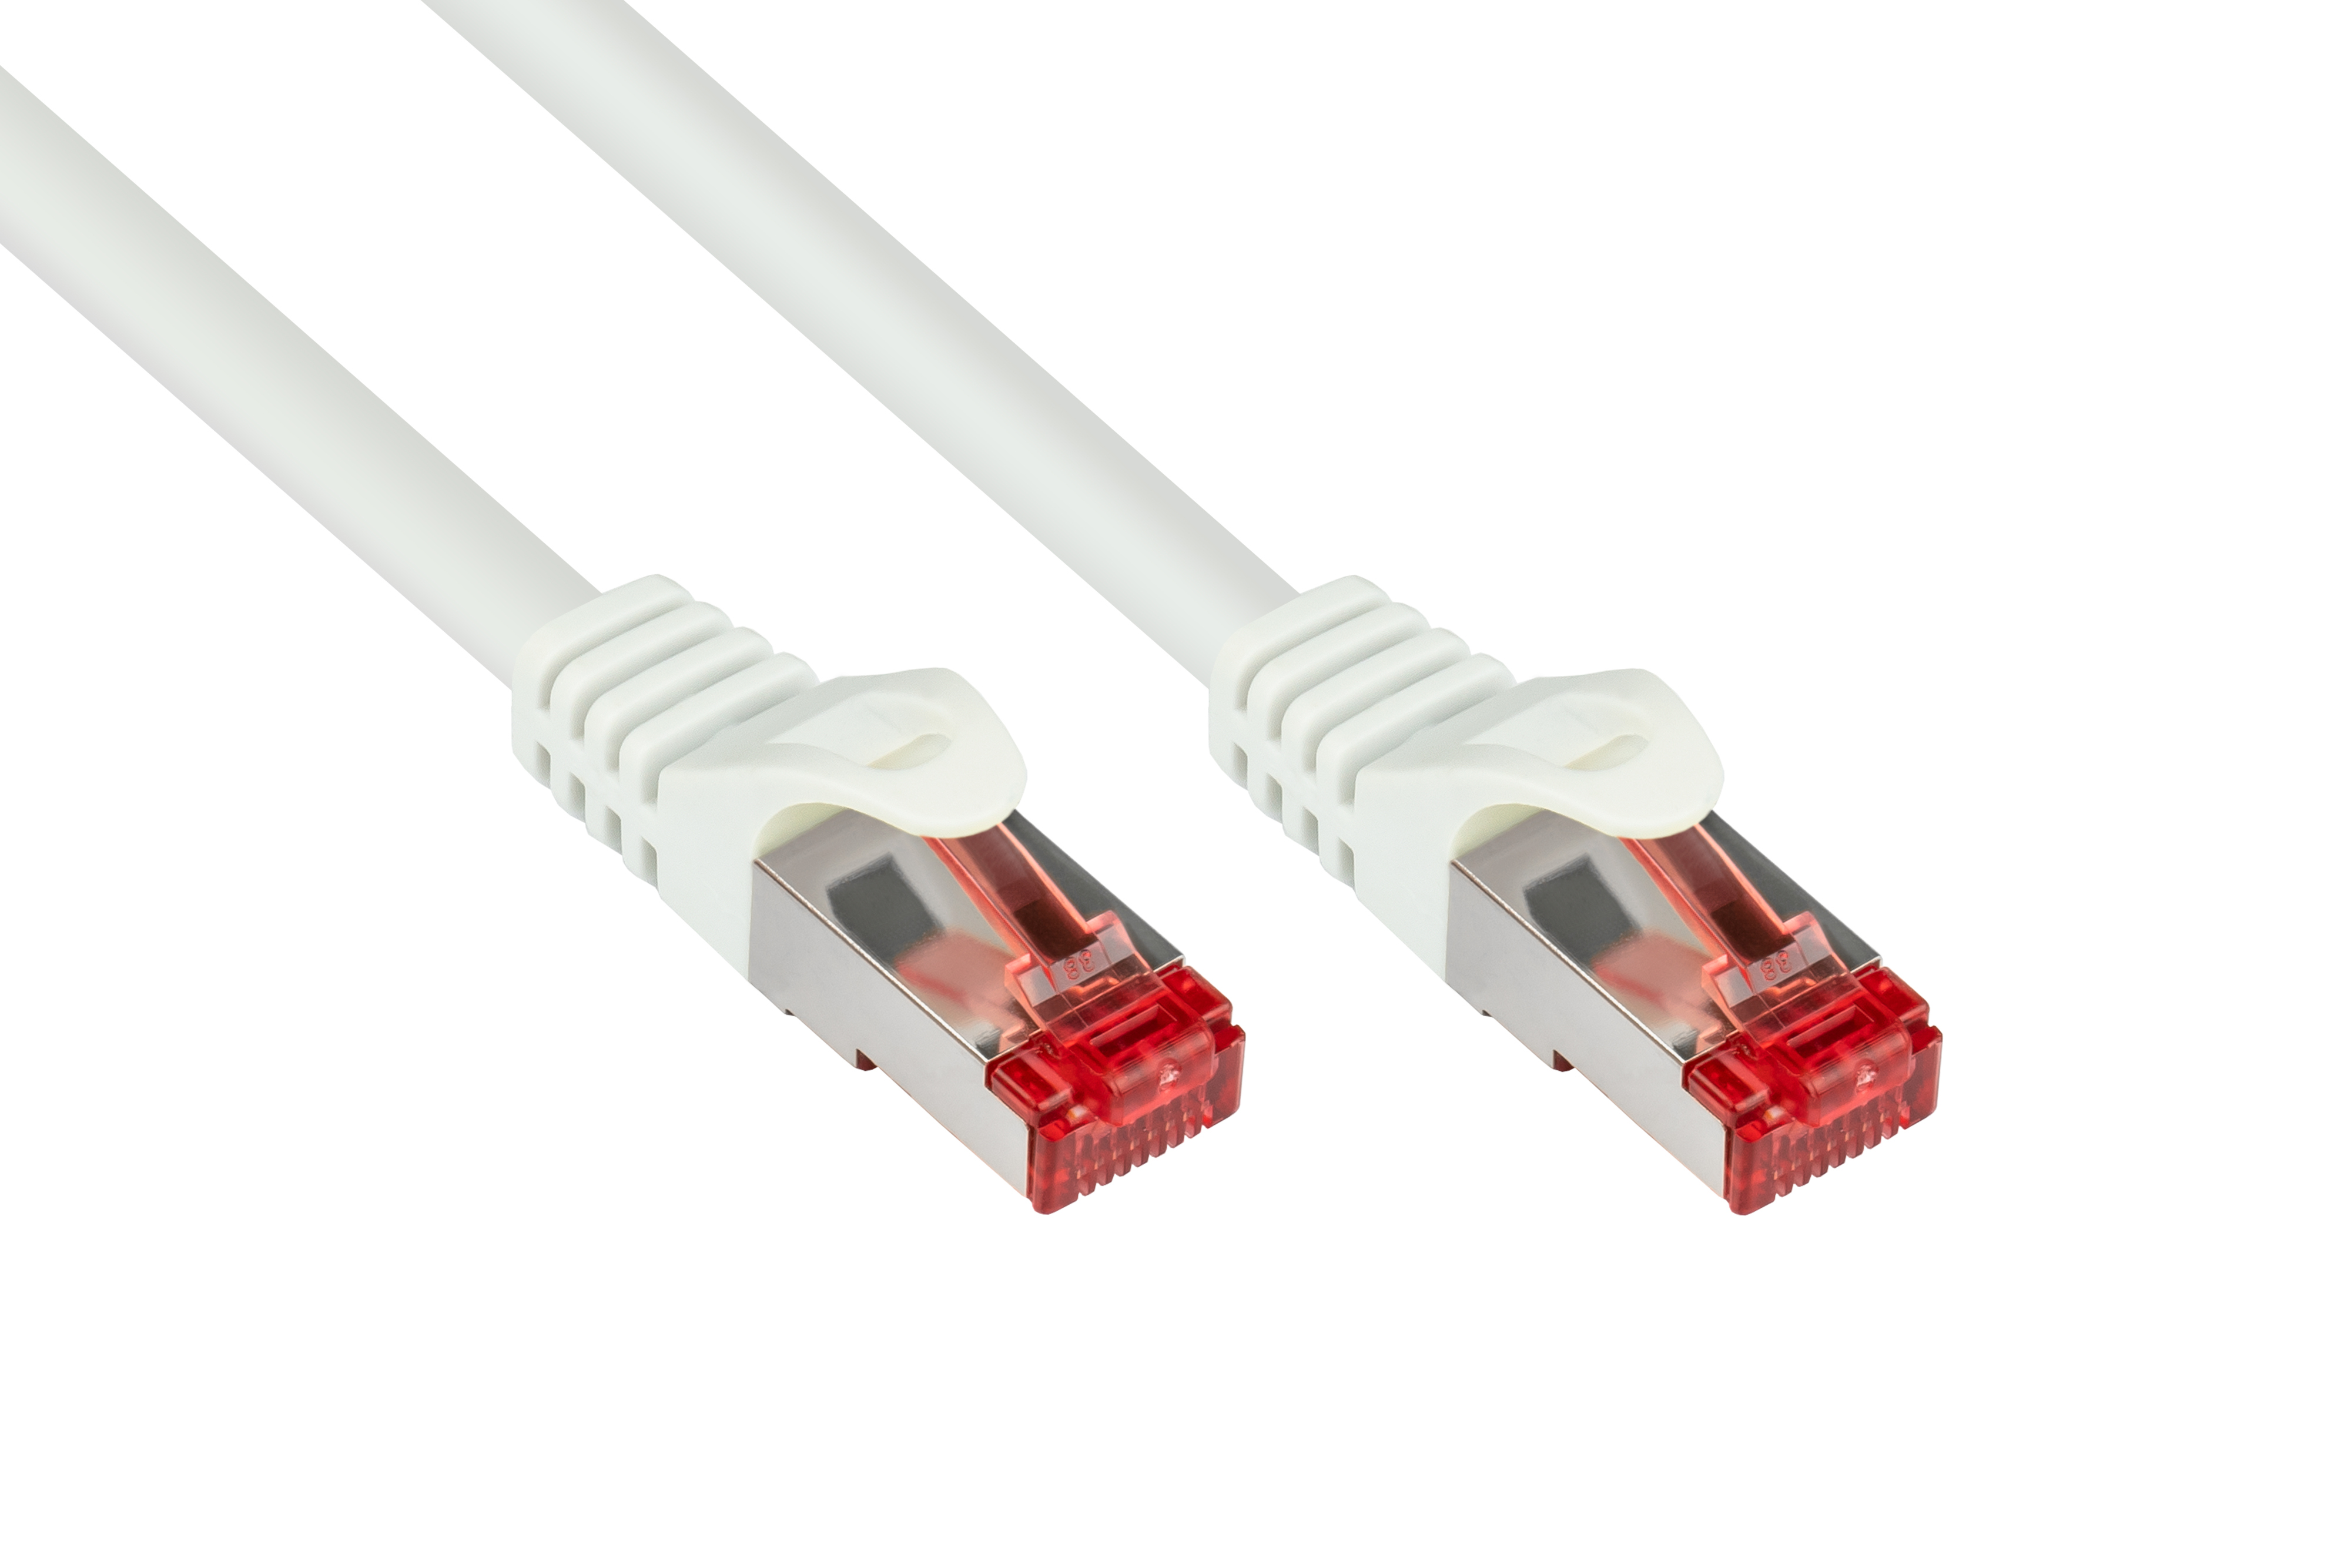 S/FTP, GOOD 250MHz, PVC, PiMF, CONNECTIONS Netzwerkkabel, m 1,5 weiß,